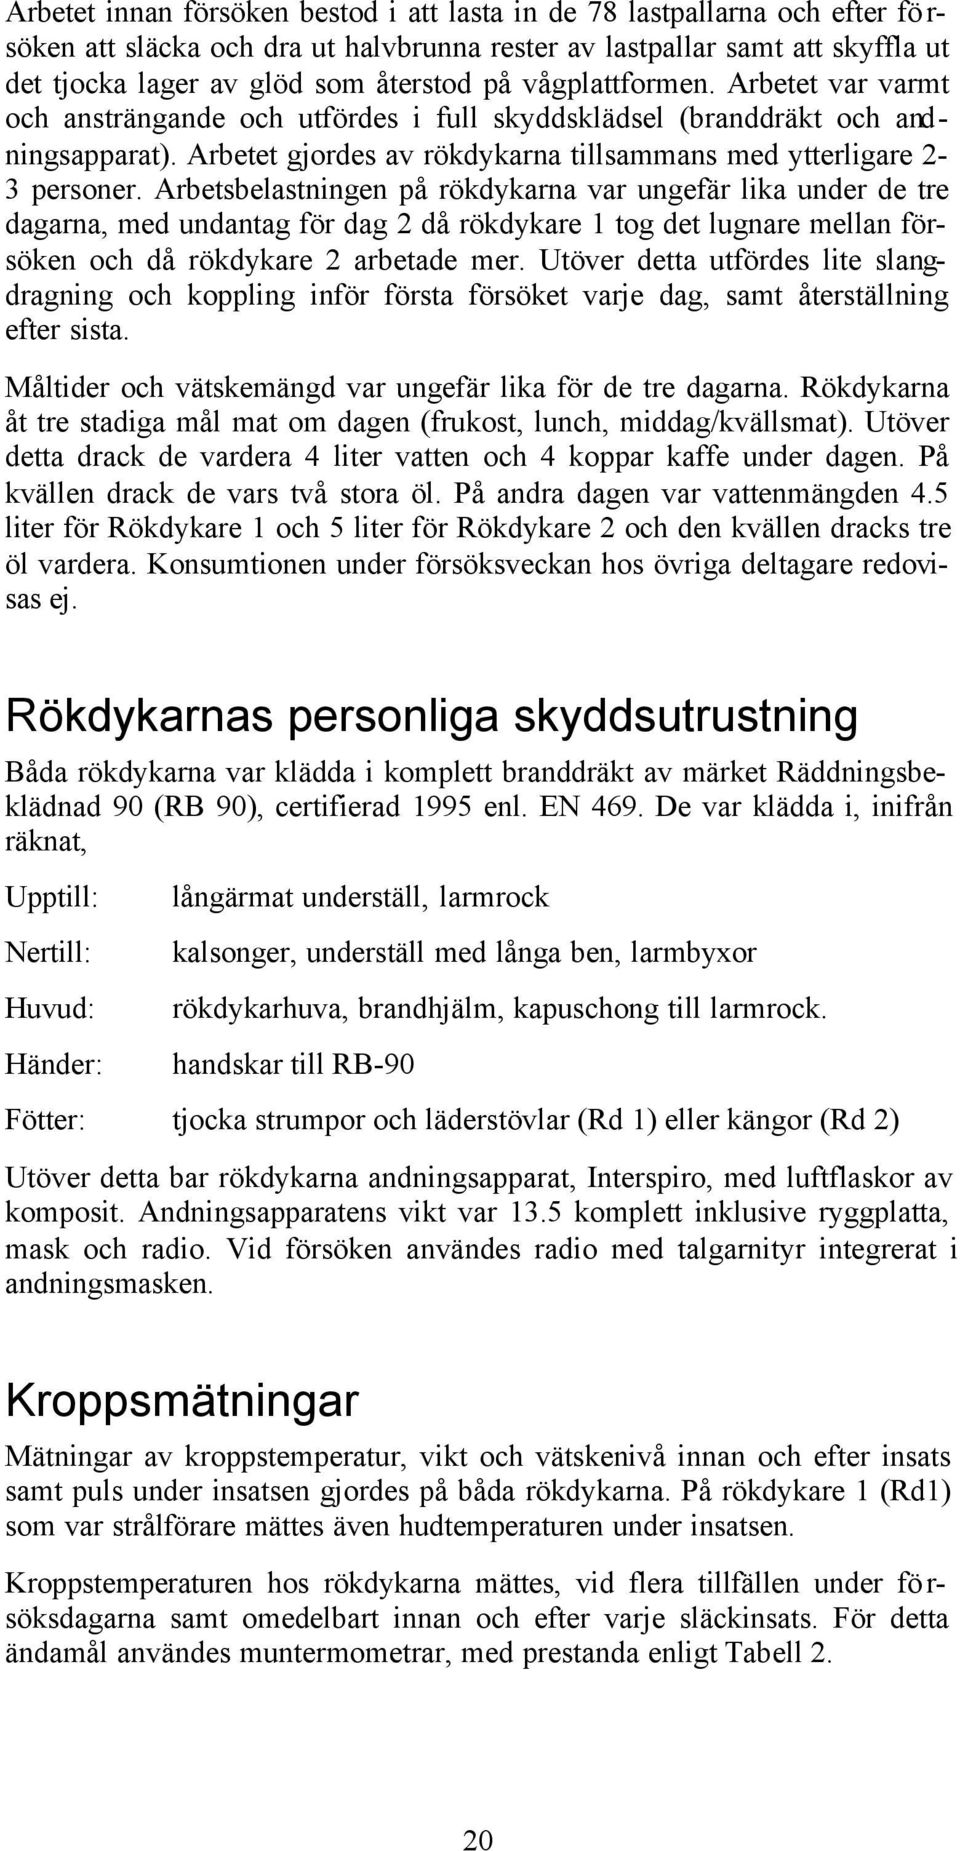 2000 Räddningsverket, Karlstad Räddningstjänstavdelningen ISBN  Beställningsnummer P21-328/ års utgåva - PDF Gratis nedladdning